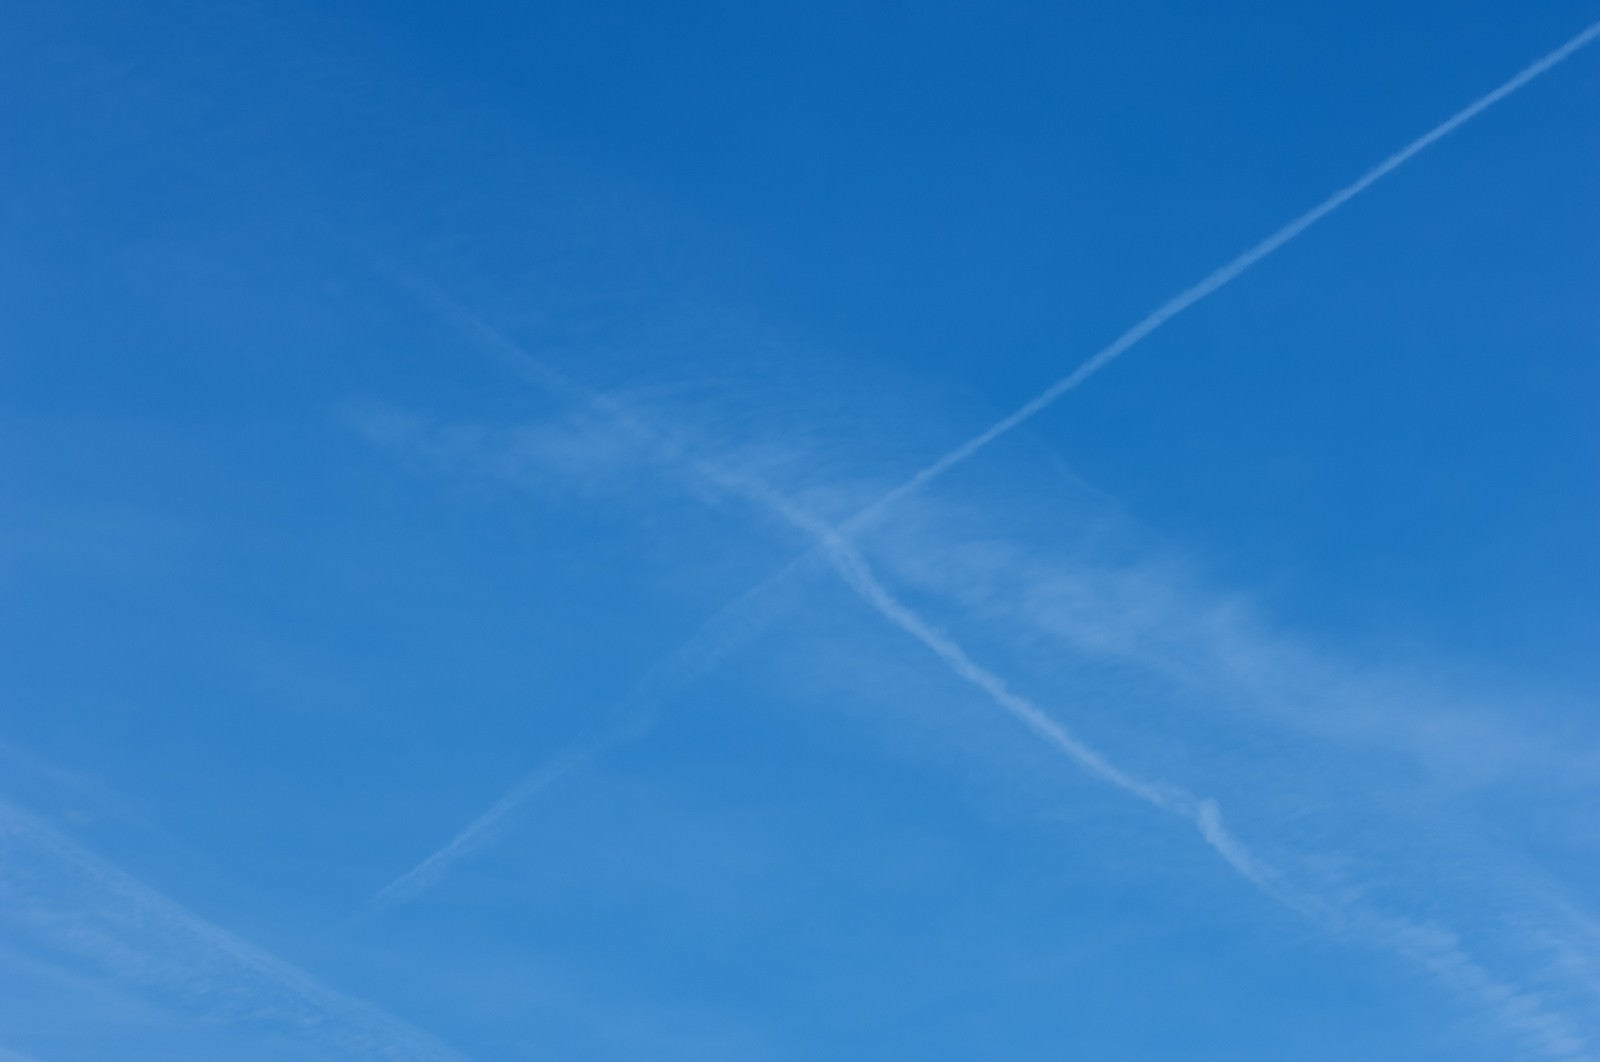 「飛行機雲が交差して消えていく」の写真